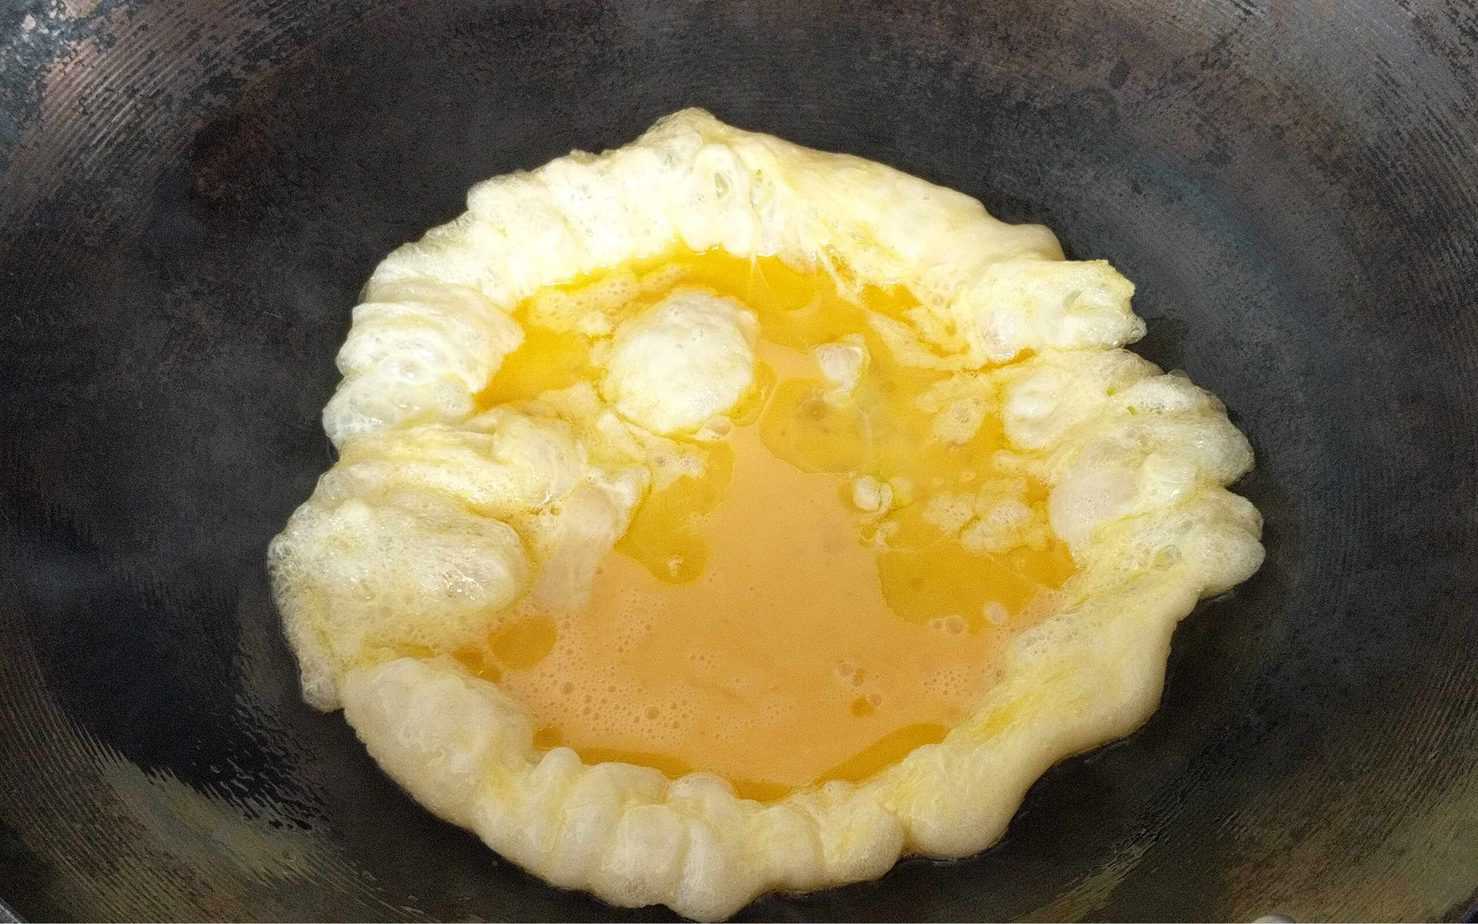 Making scrambled egg in a wok